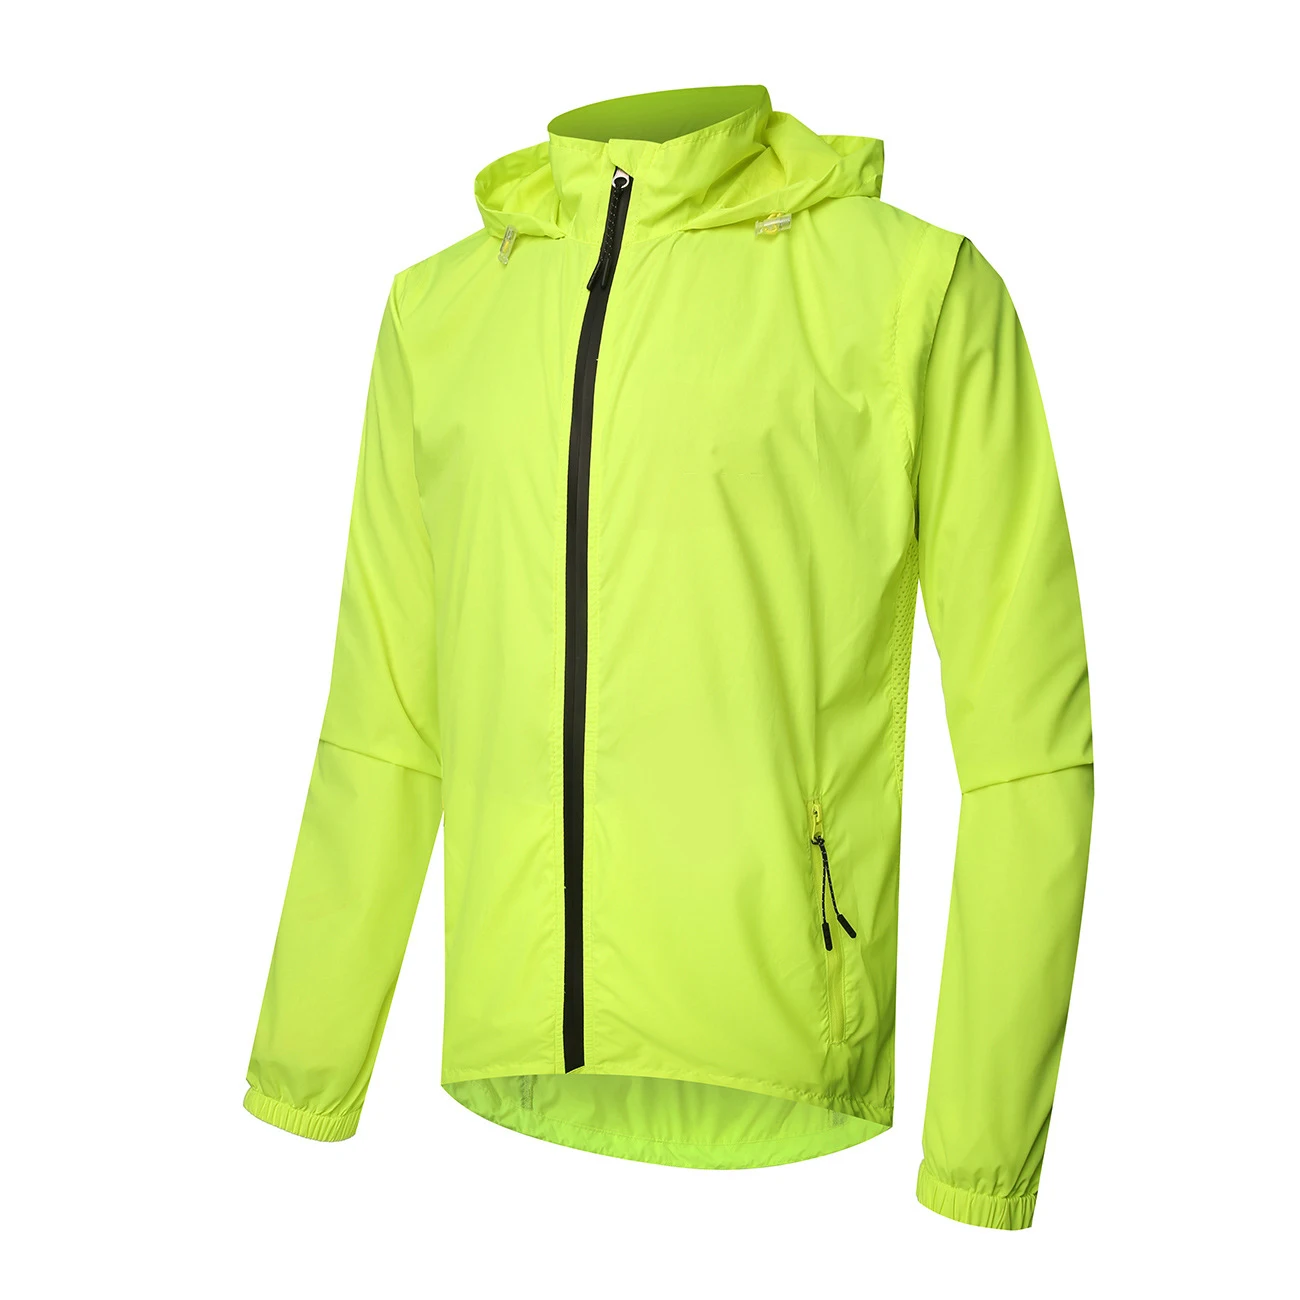 Велосипедная куртка, зимняя, ветрозащитная, со съемными рукавами, жилет, водонепроницаемая, для мужчин и женщин, куртки для велоспорта, одежда для велоспорта, куртки для бега